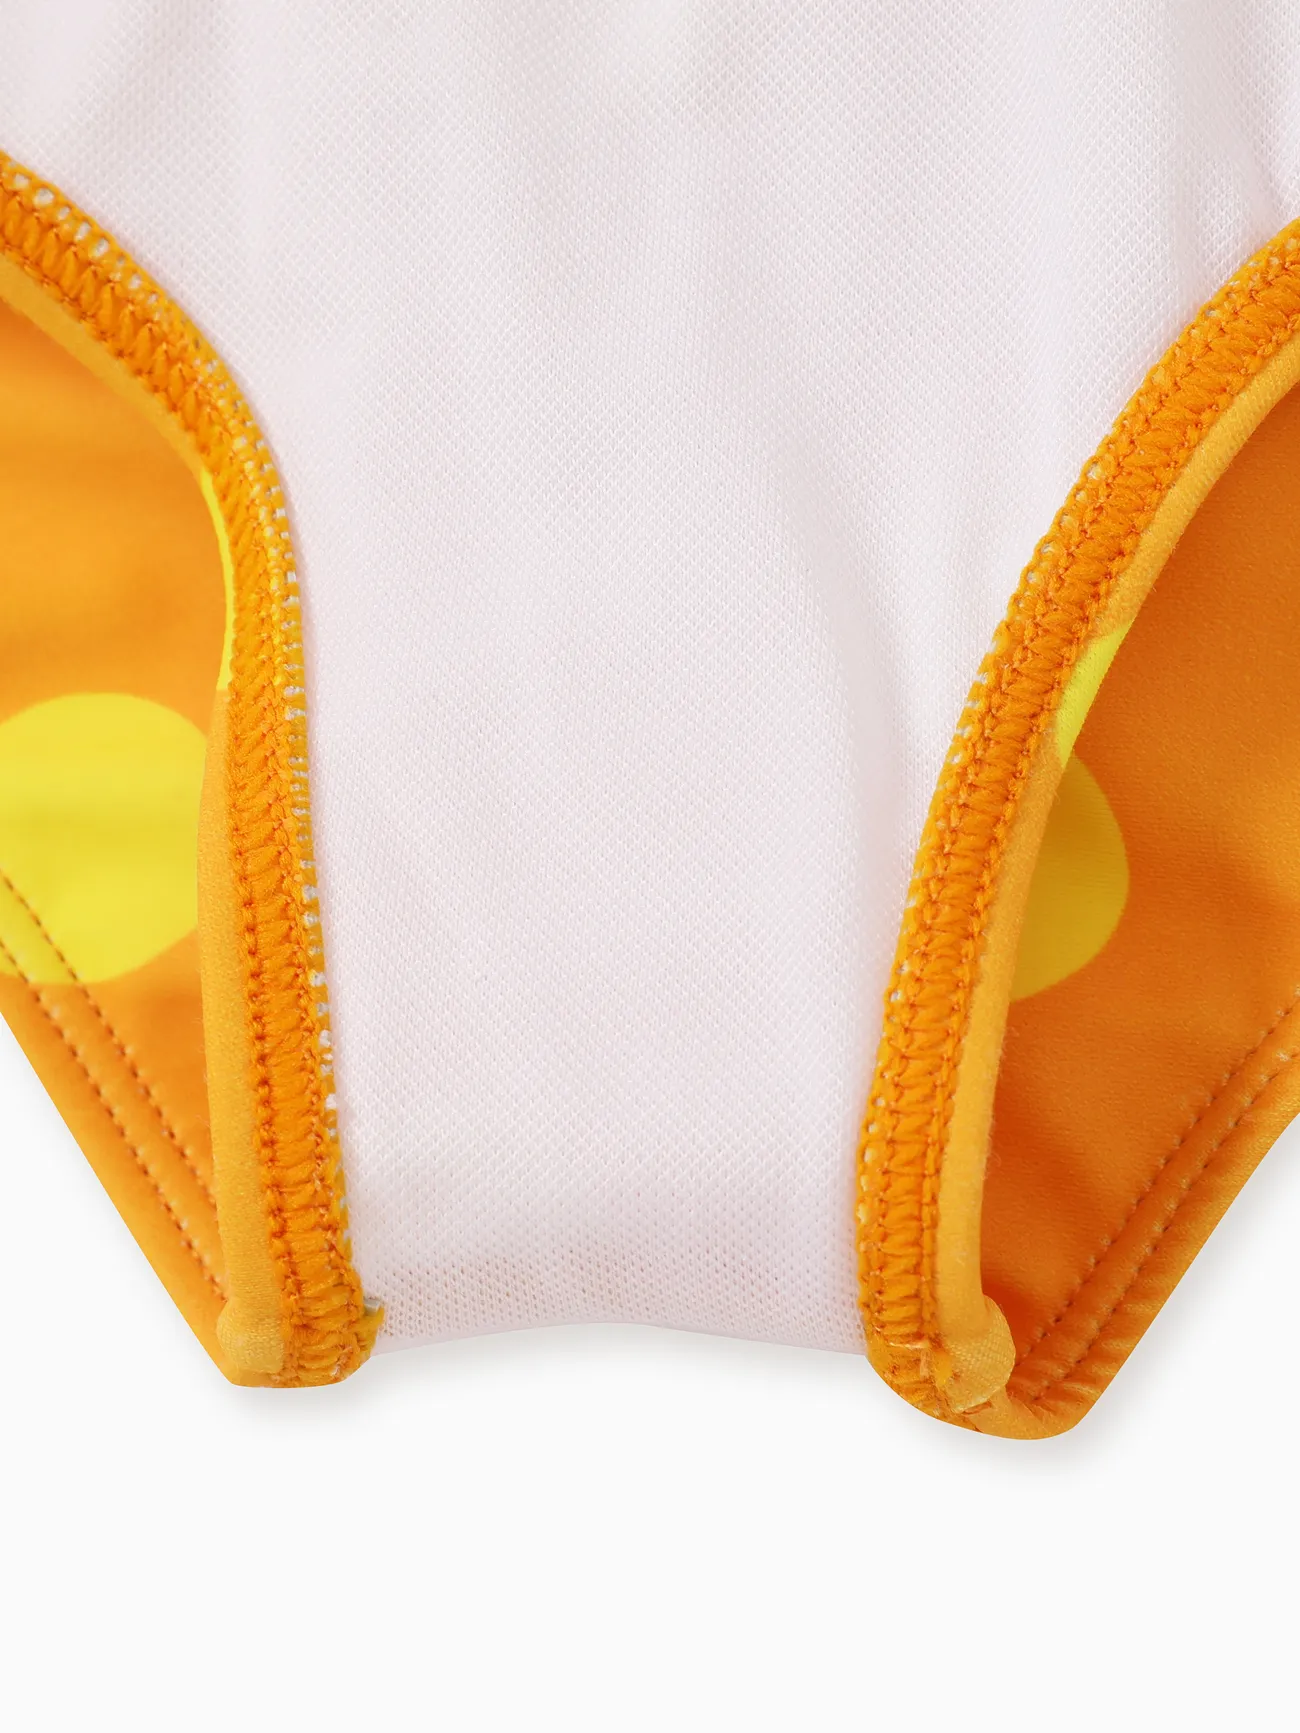 Bebé Chica Volantes Conejo Infantil Camiseta sin mangas Trajes de baño Amarillo big image 1